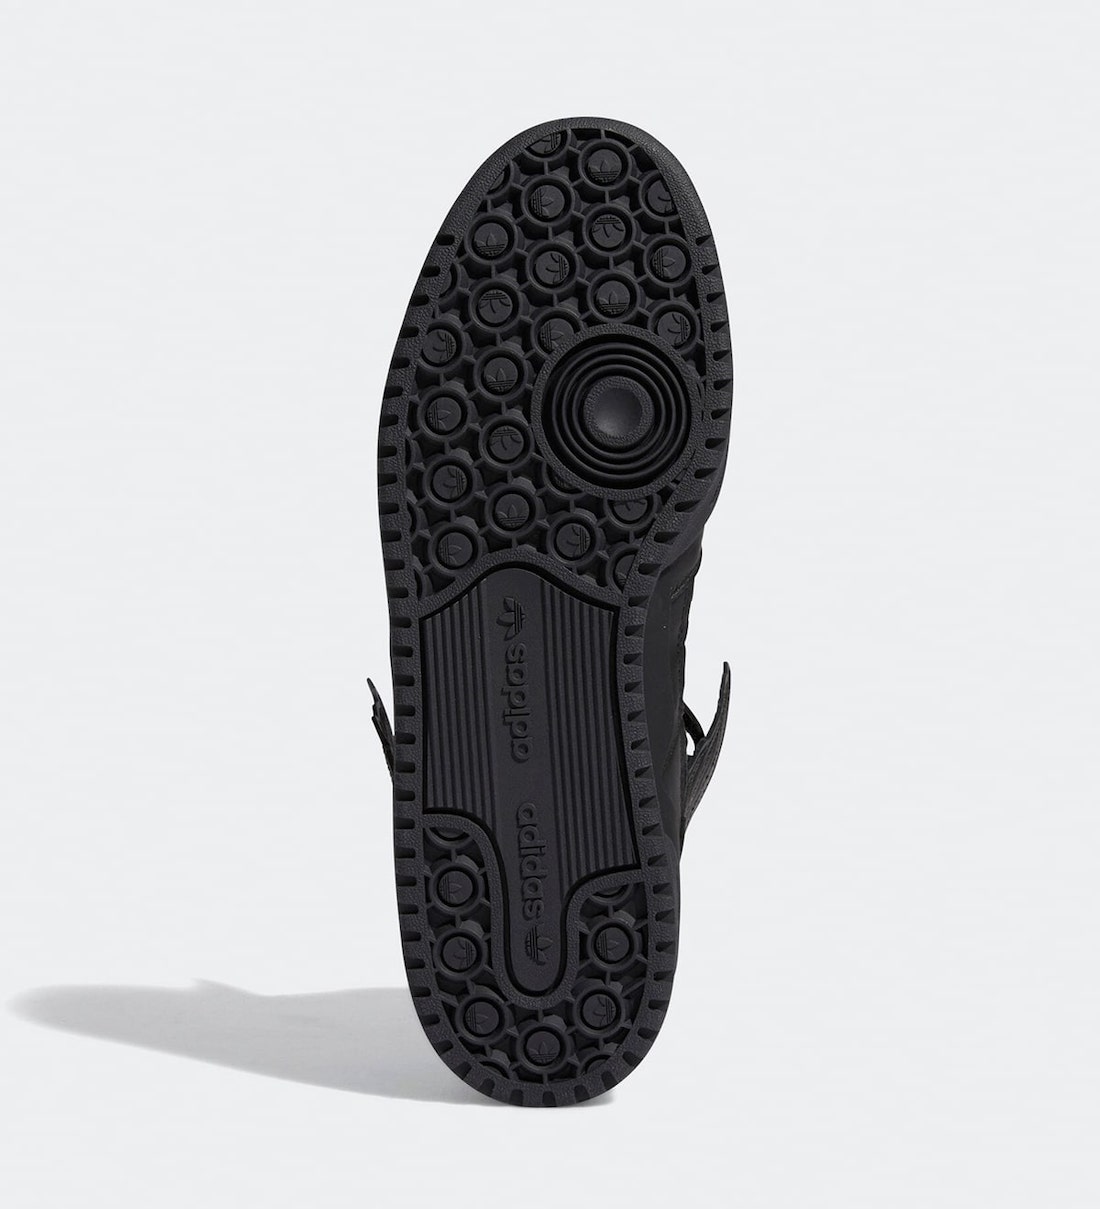 Jeremy Scott x adidas Forum Hi Wings 4.0 Black GY4419 Release Date 